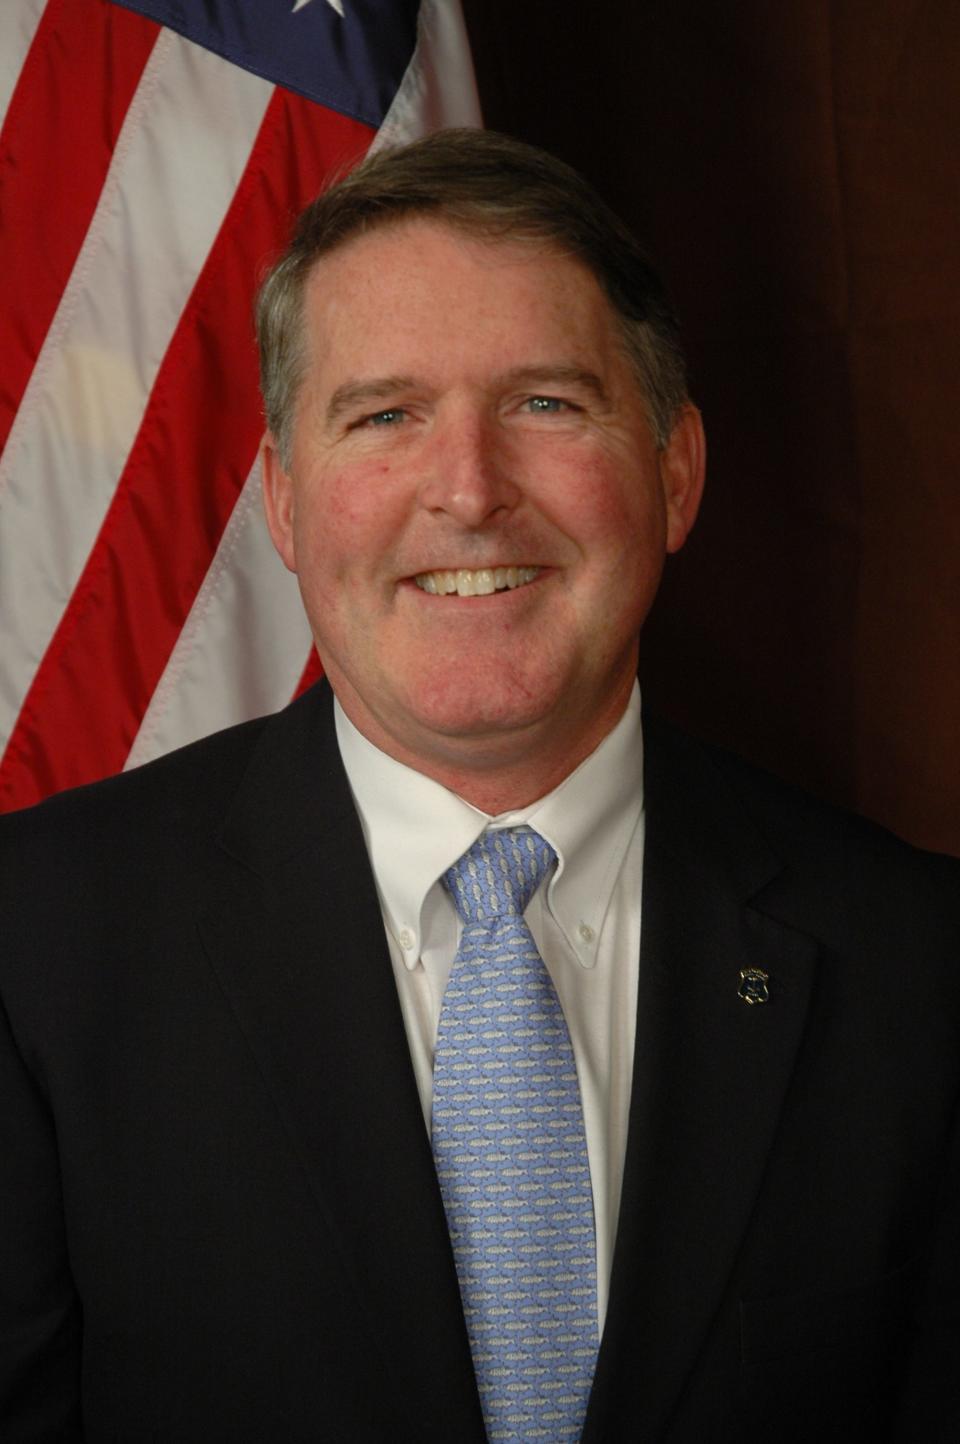 State Rep. John G. Edwards